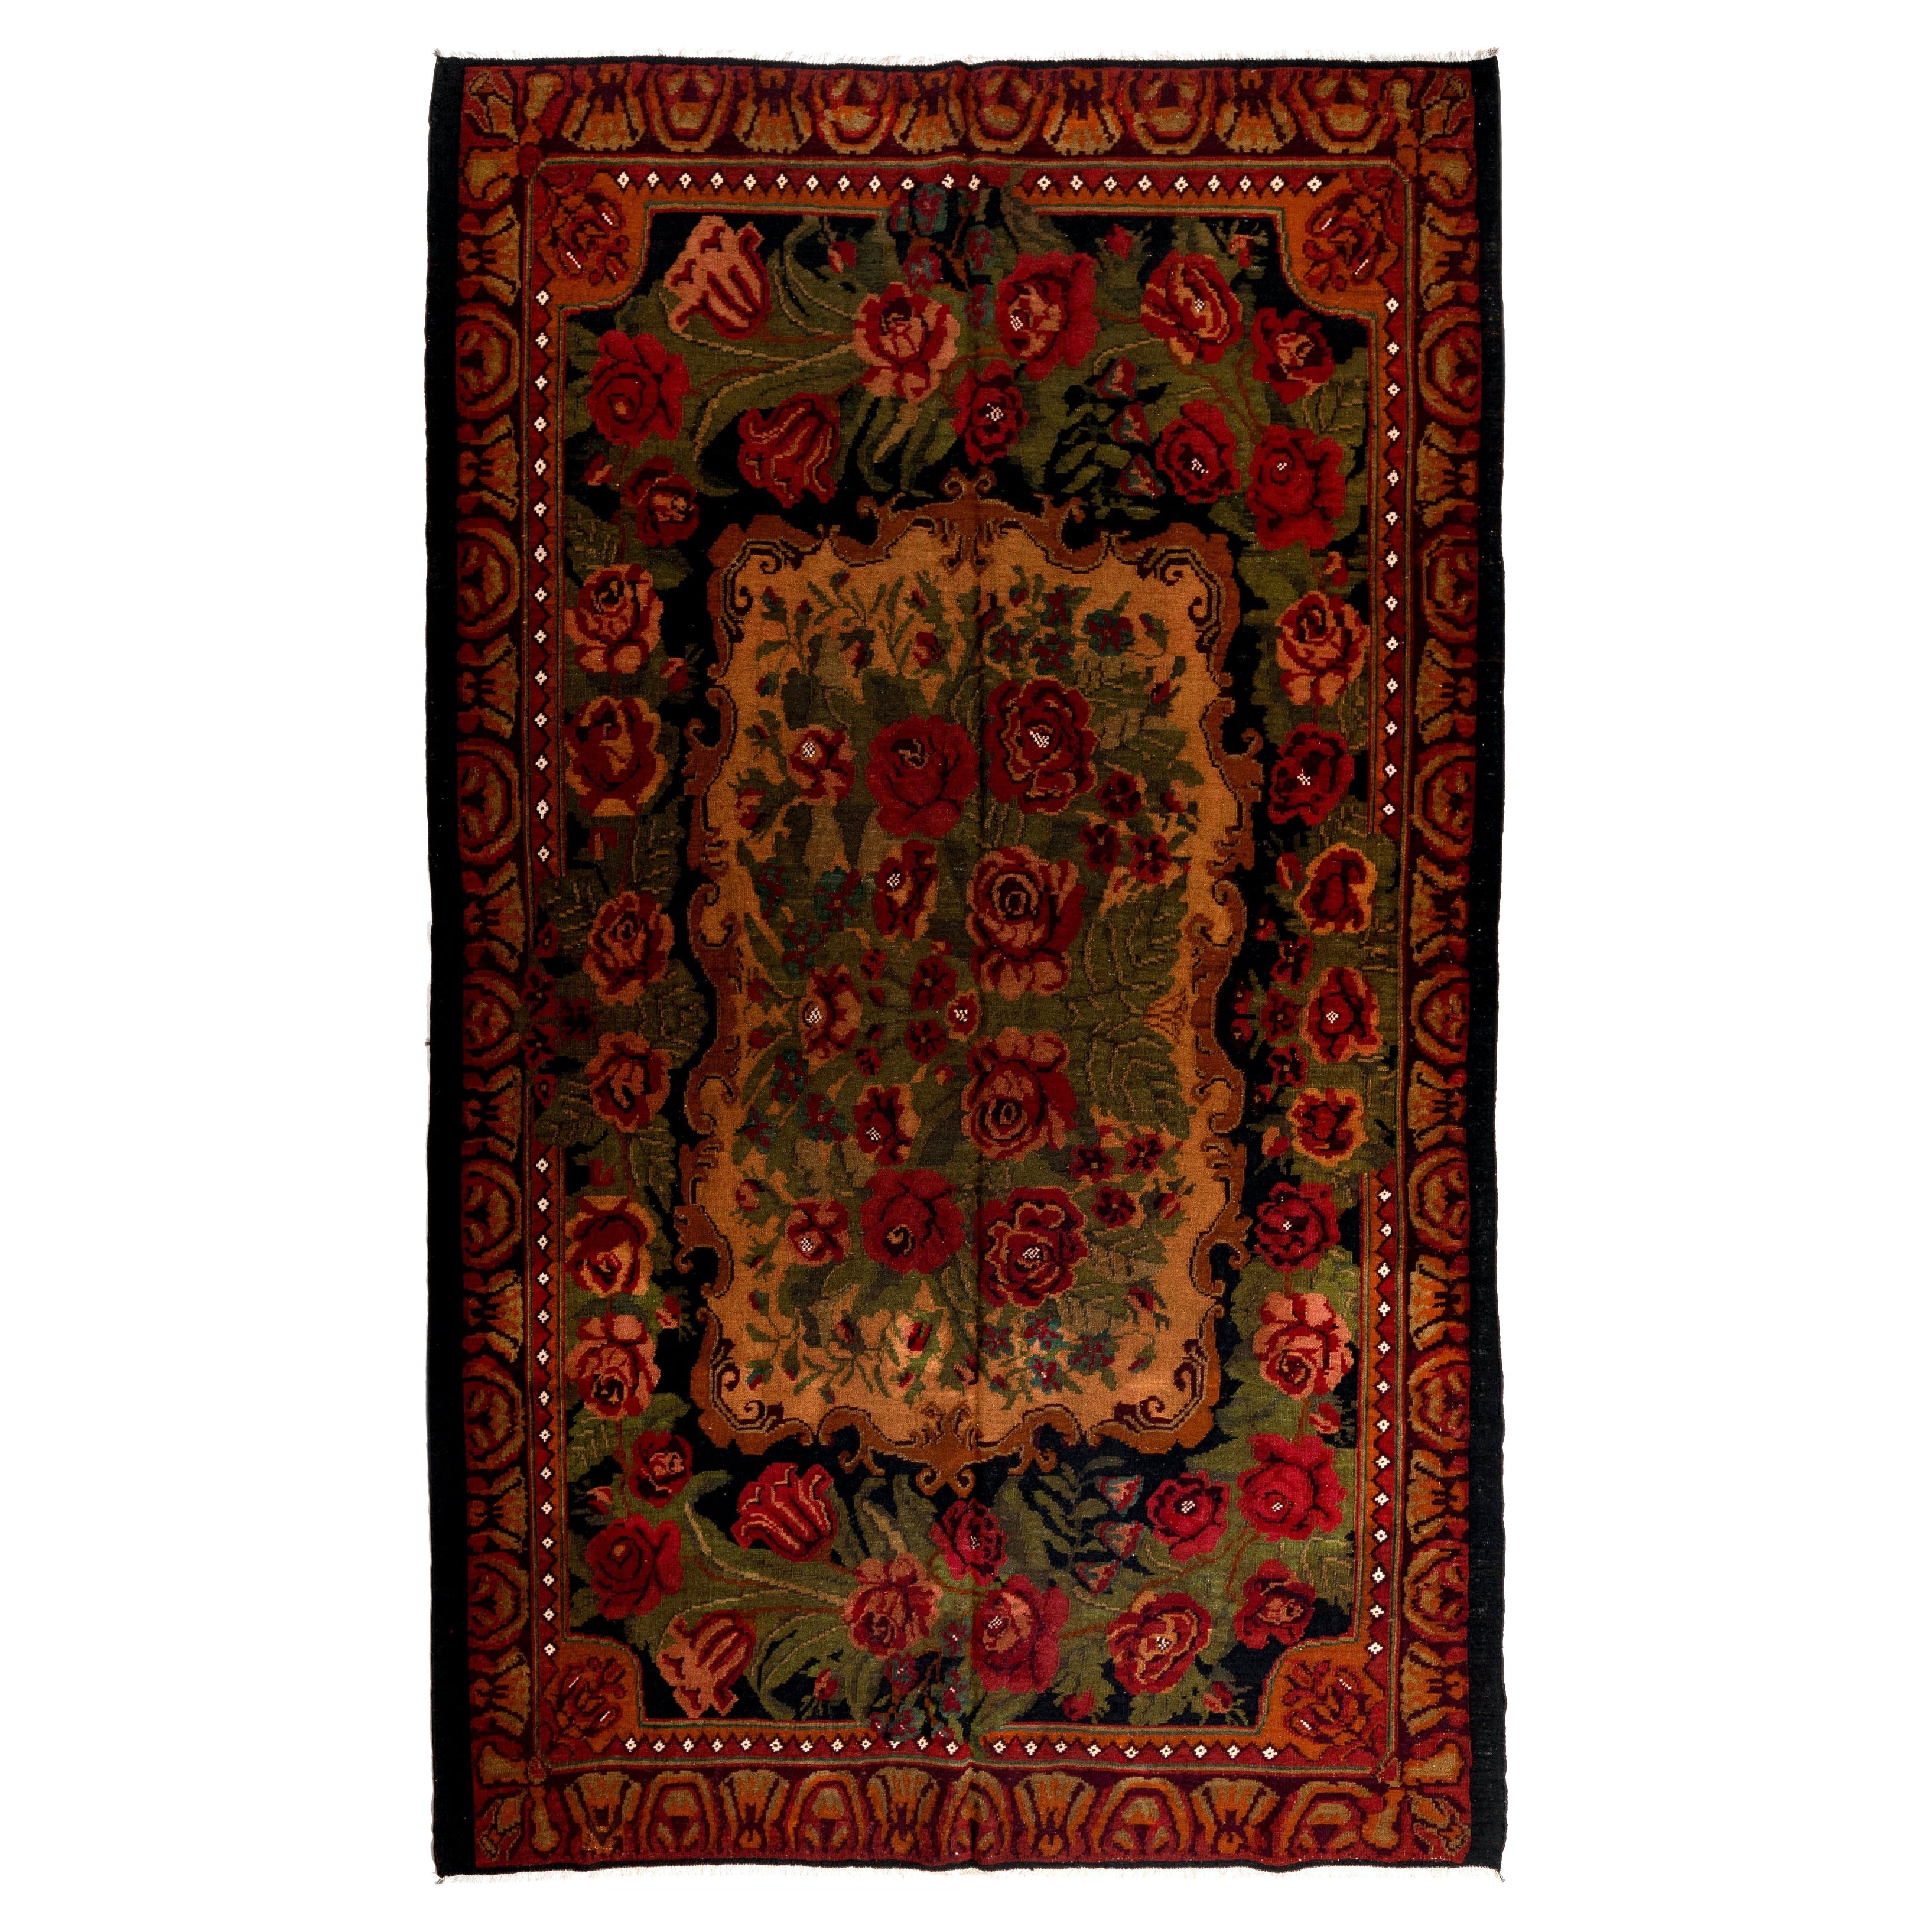 Moldawischer Kelim, handgefertigt, 7x11,5 Fuß  Floral bessarabischer Teppich, Vintage-Wandteppich